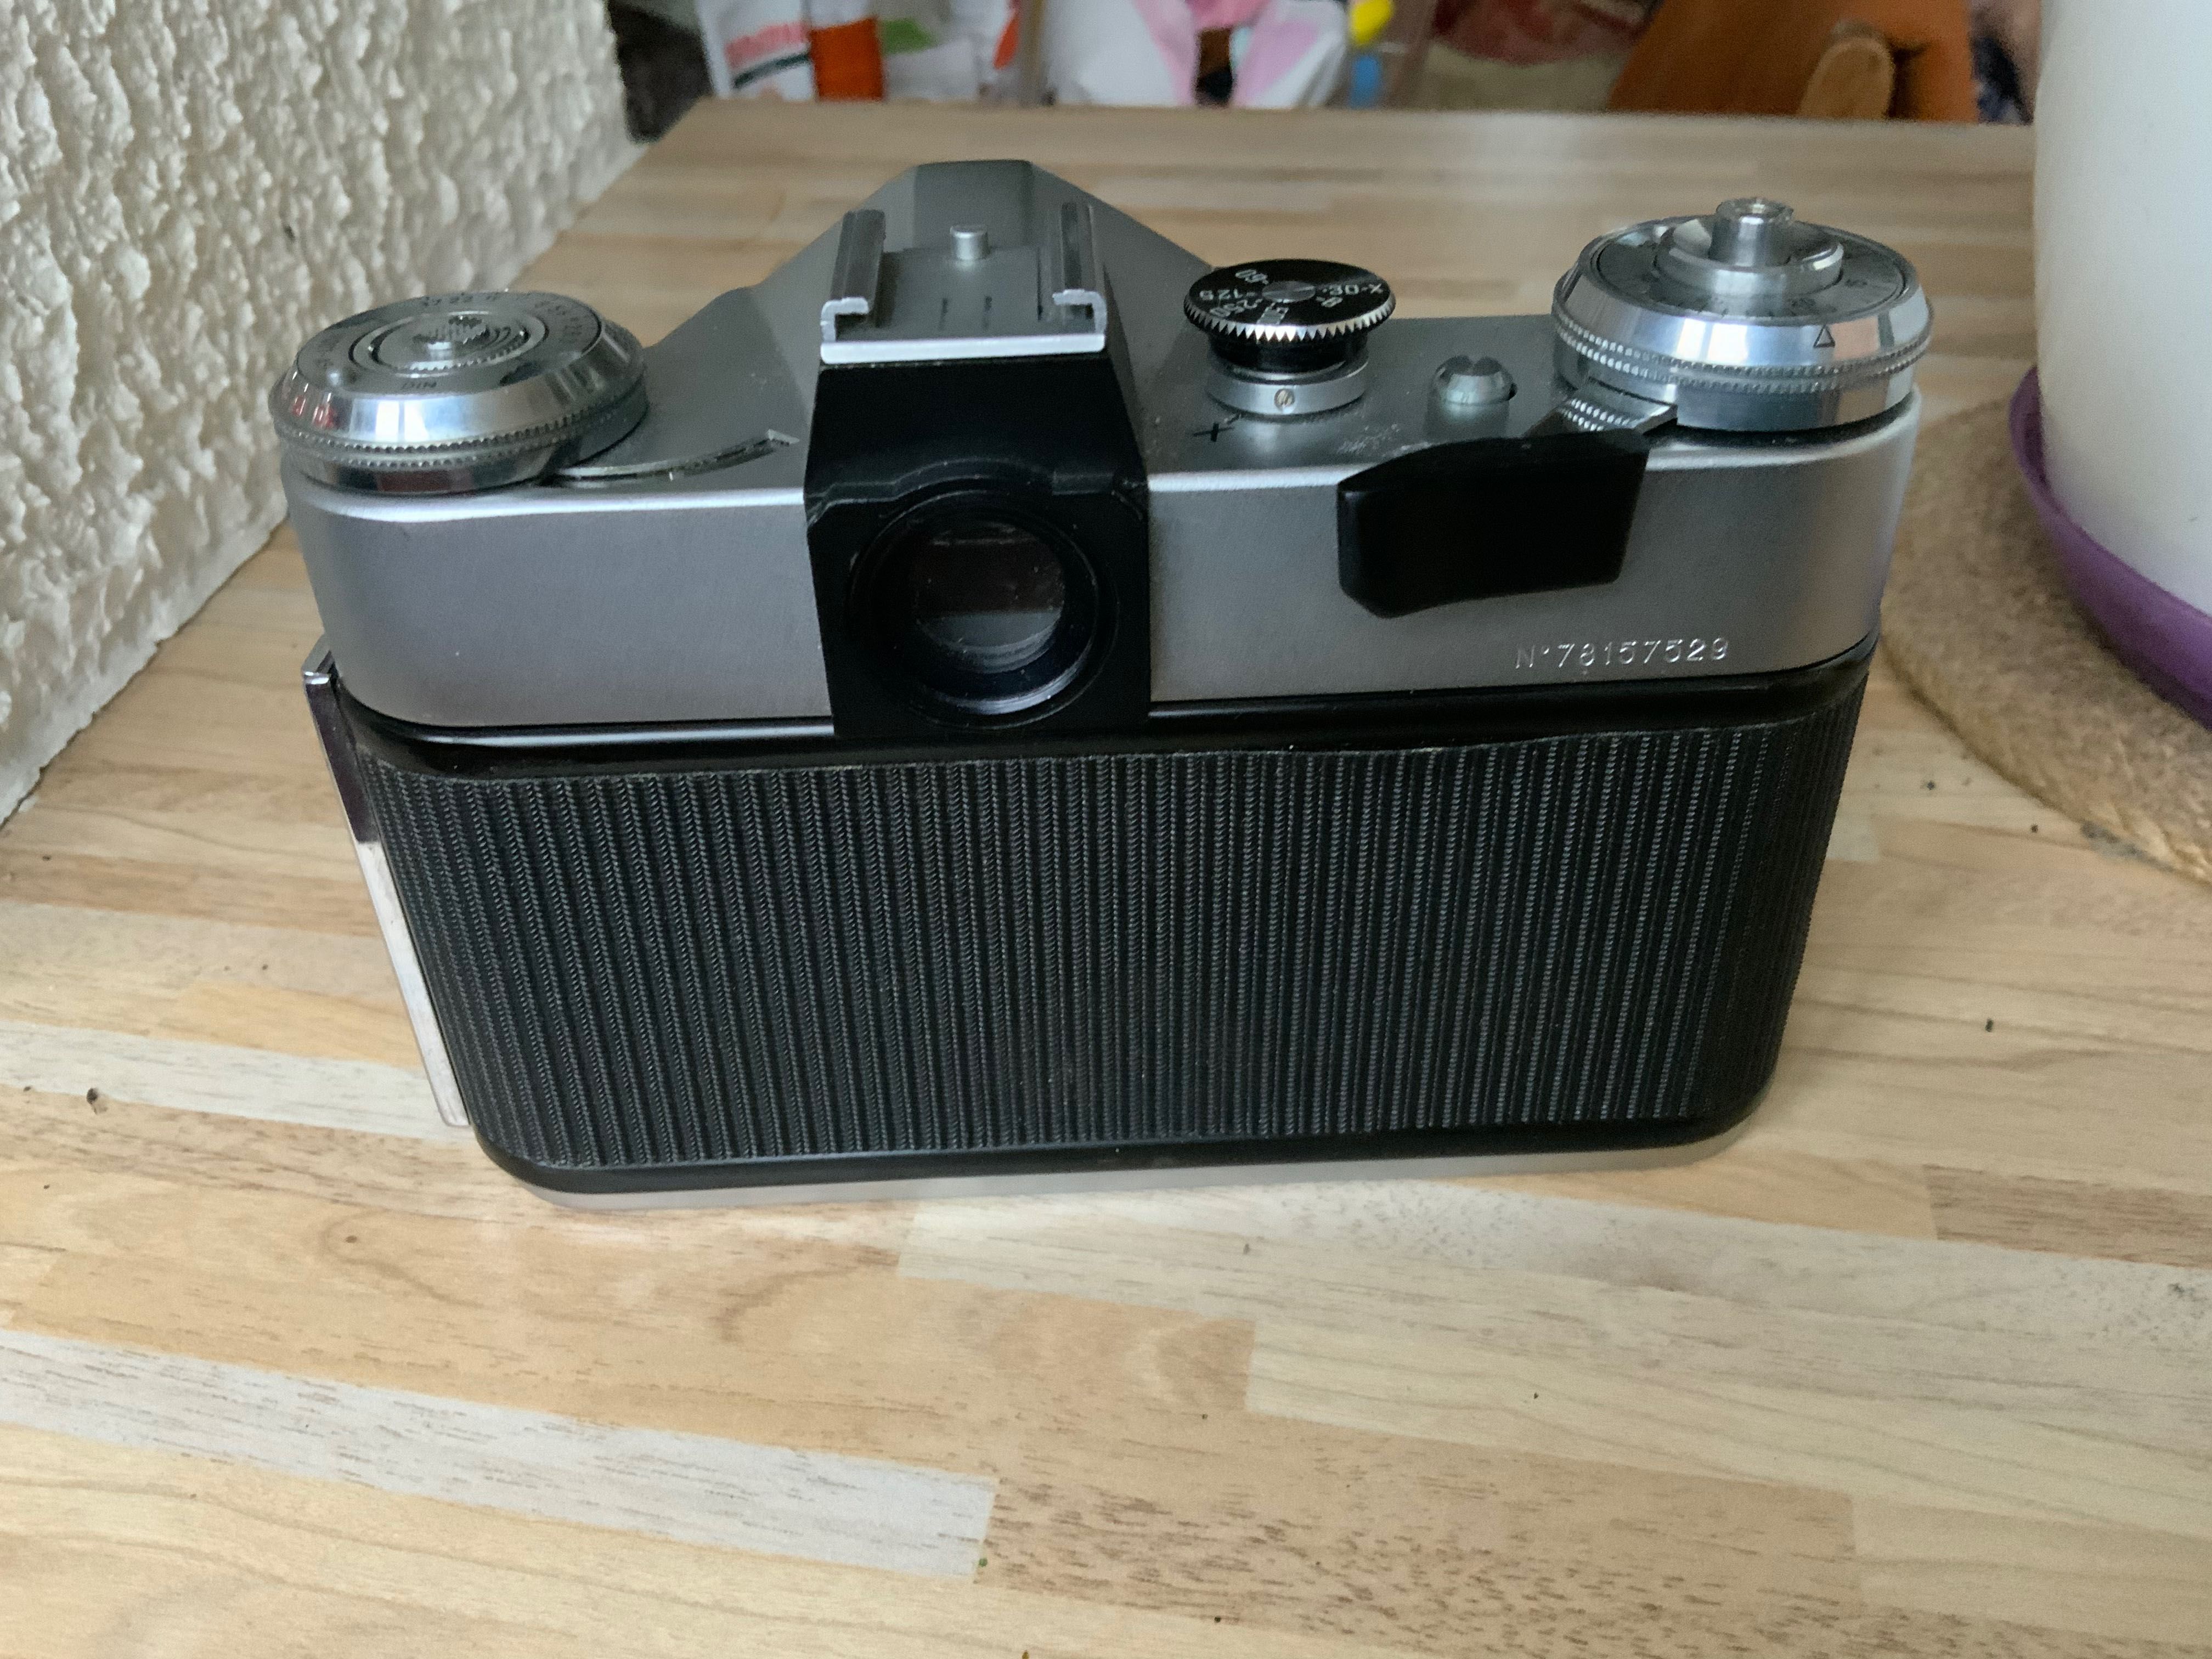 Пленочный фотоаппарат Зенит-Е объектив Гелиус 50-2 с кожаным чехлом